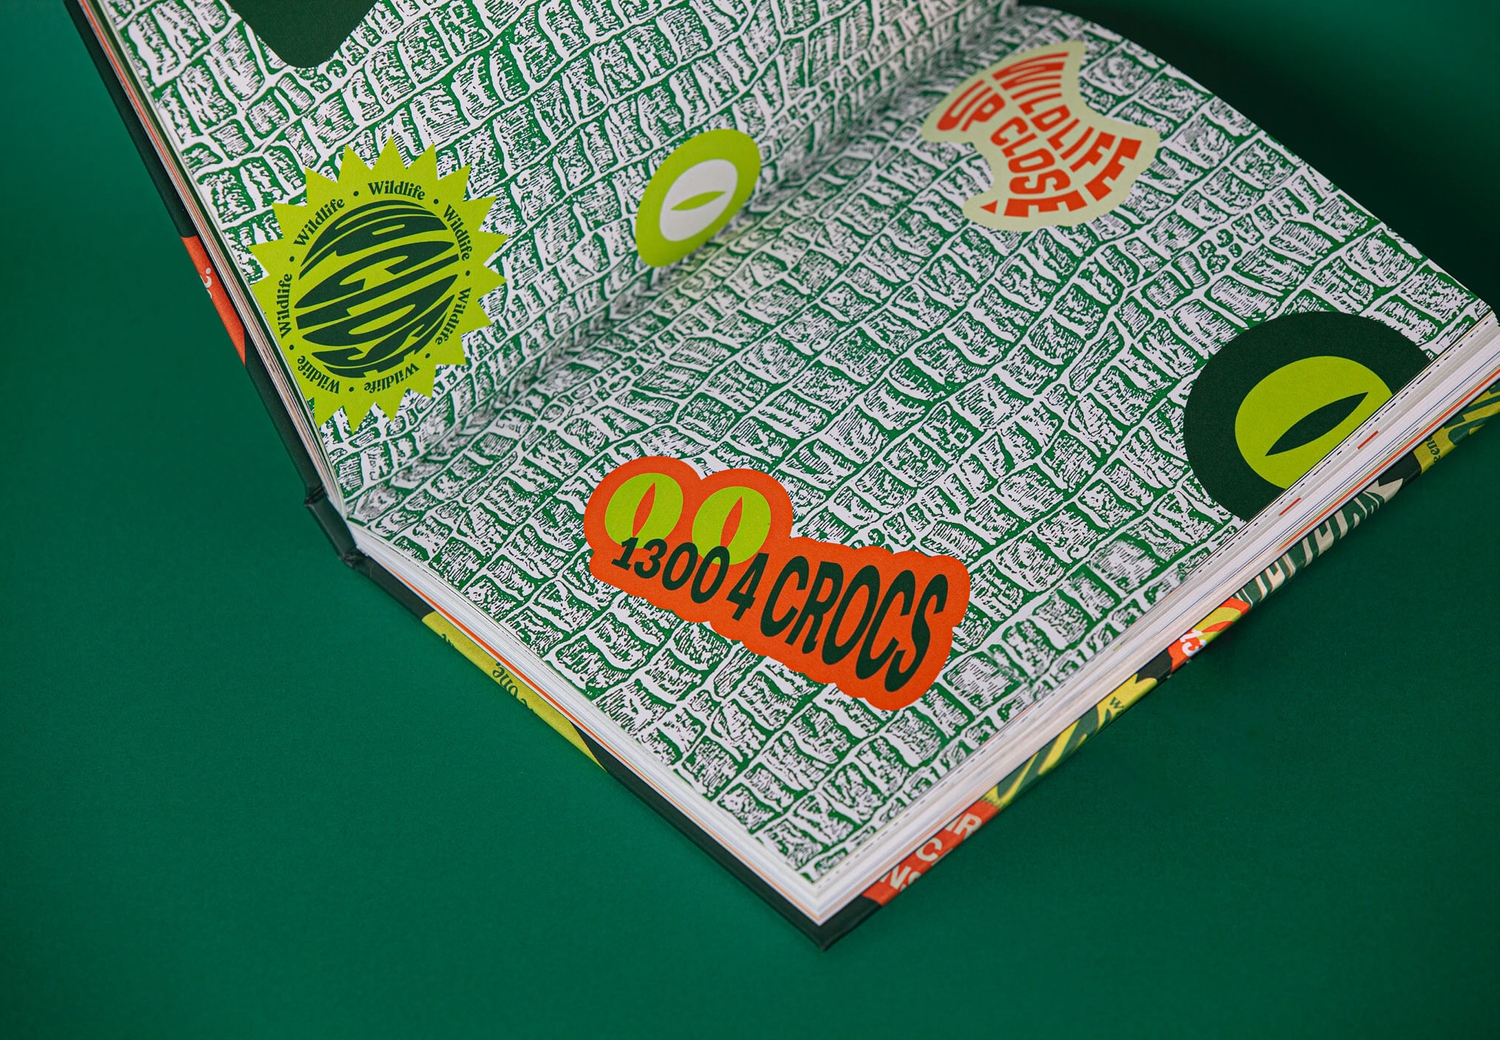 Reptile Encounters - Brandbook Internal Spread | Atollon - a design company